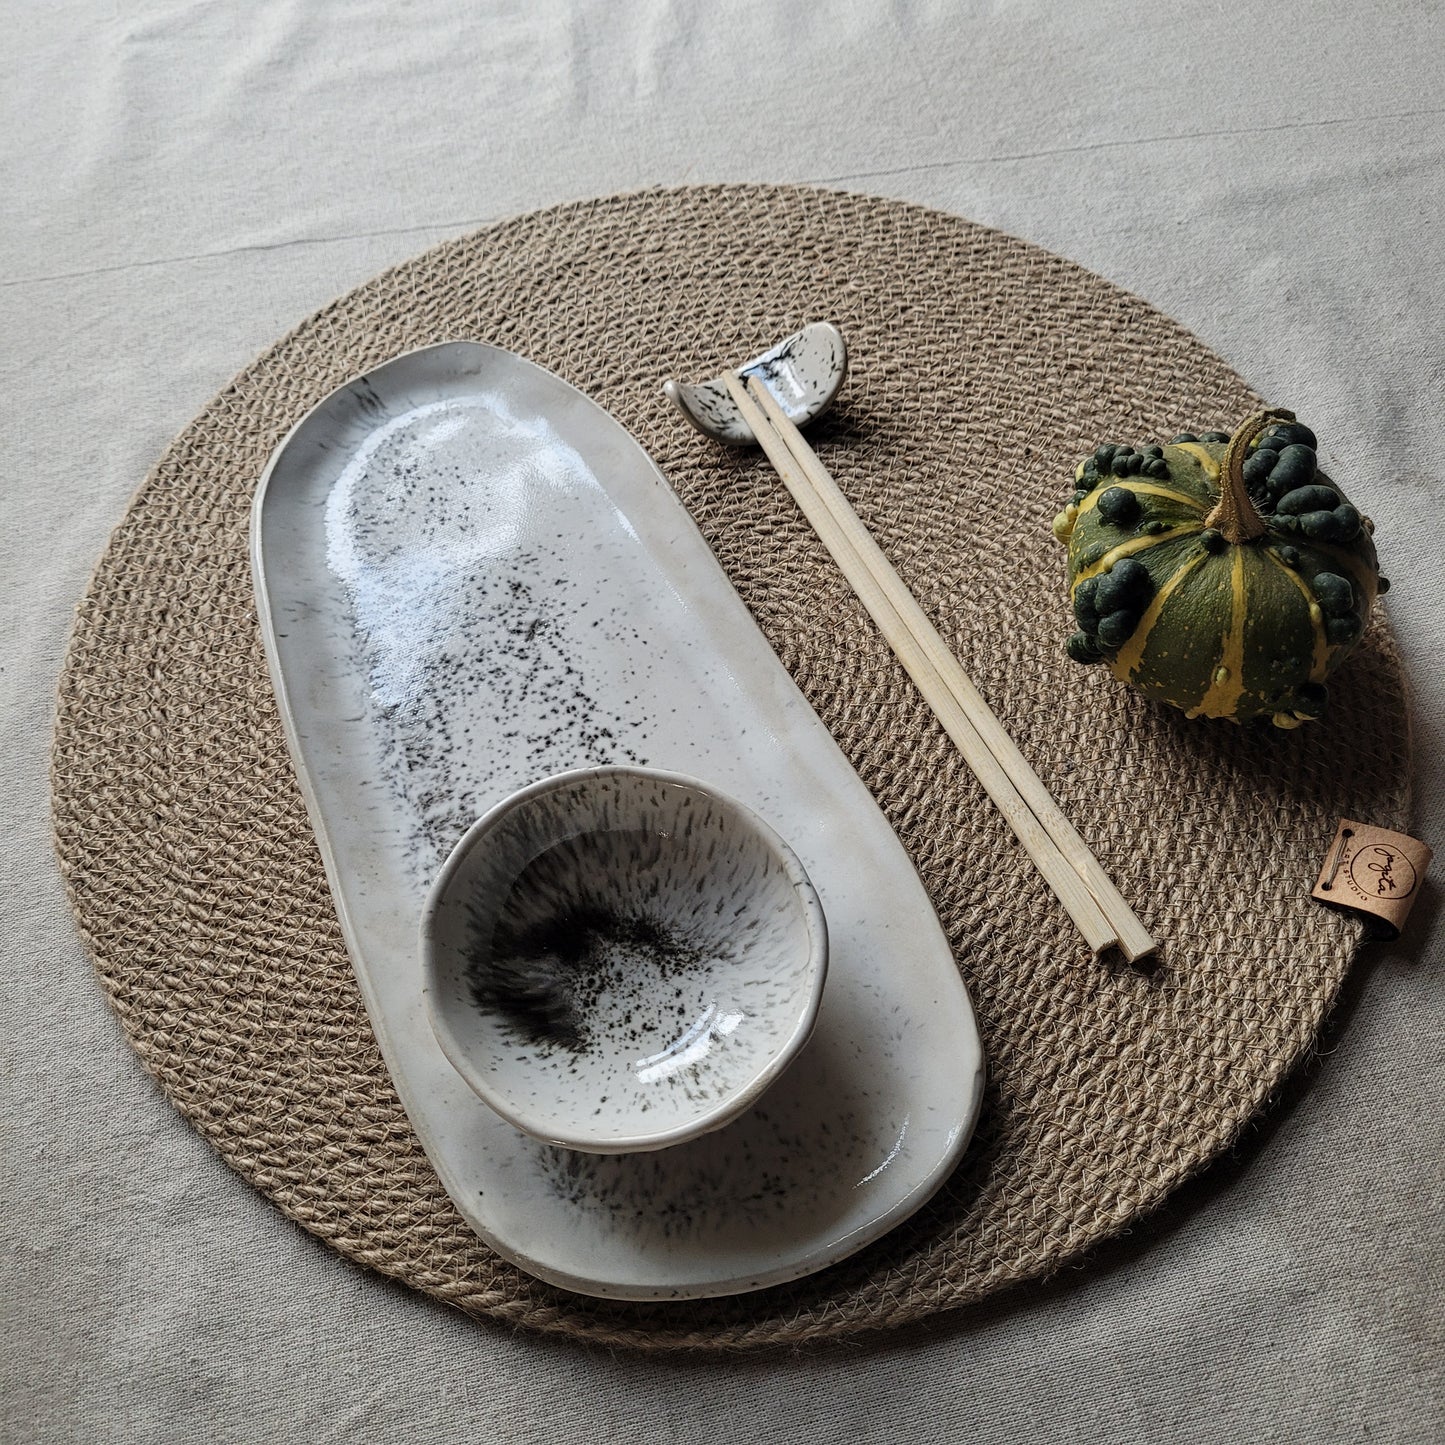 Ar rokām darināts keramikas suši komplekts:uzlabojiet savu maltīti ar japāņu eleganci